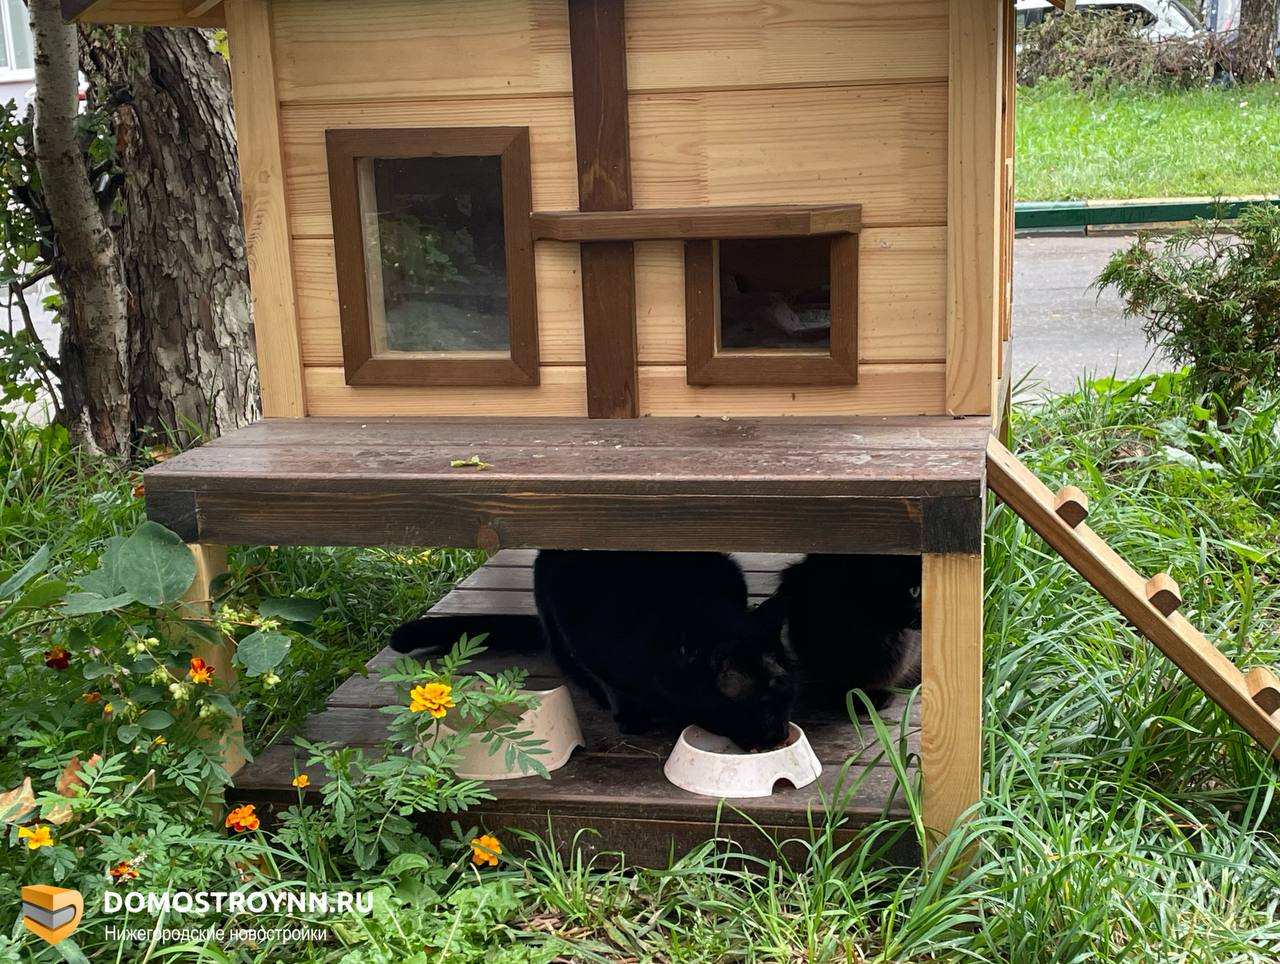 Столовая, гостиная и лаунж-зона: как живут нижегородские коты в собственном доме - фото 3